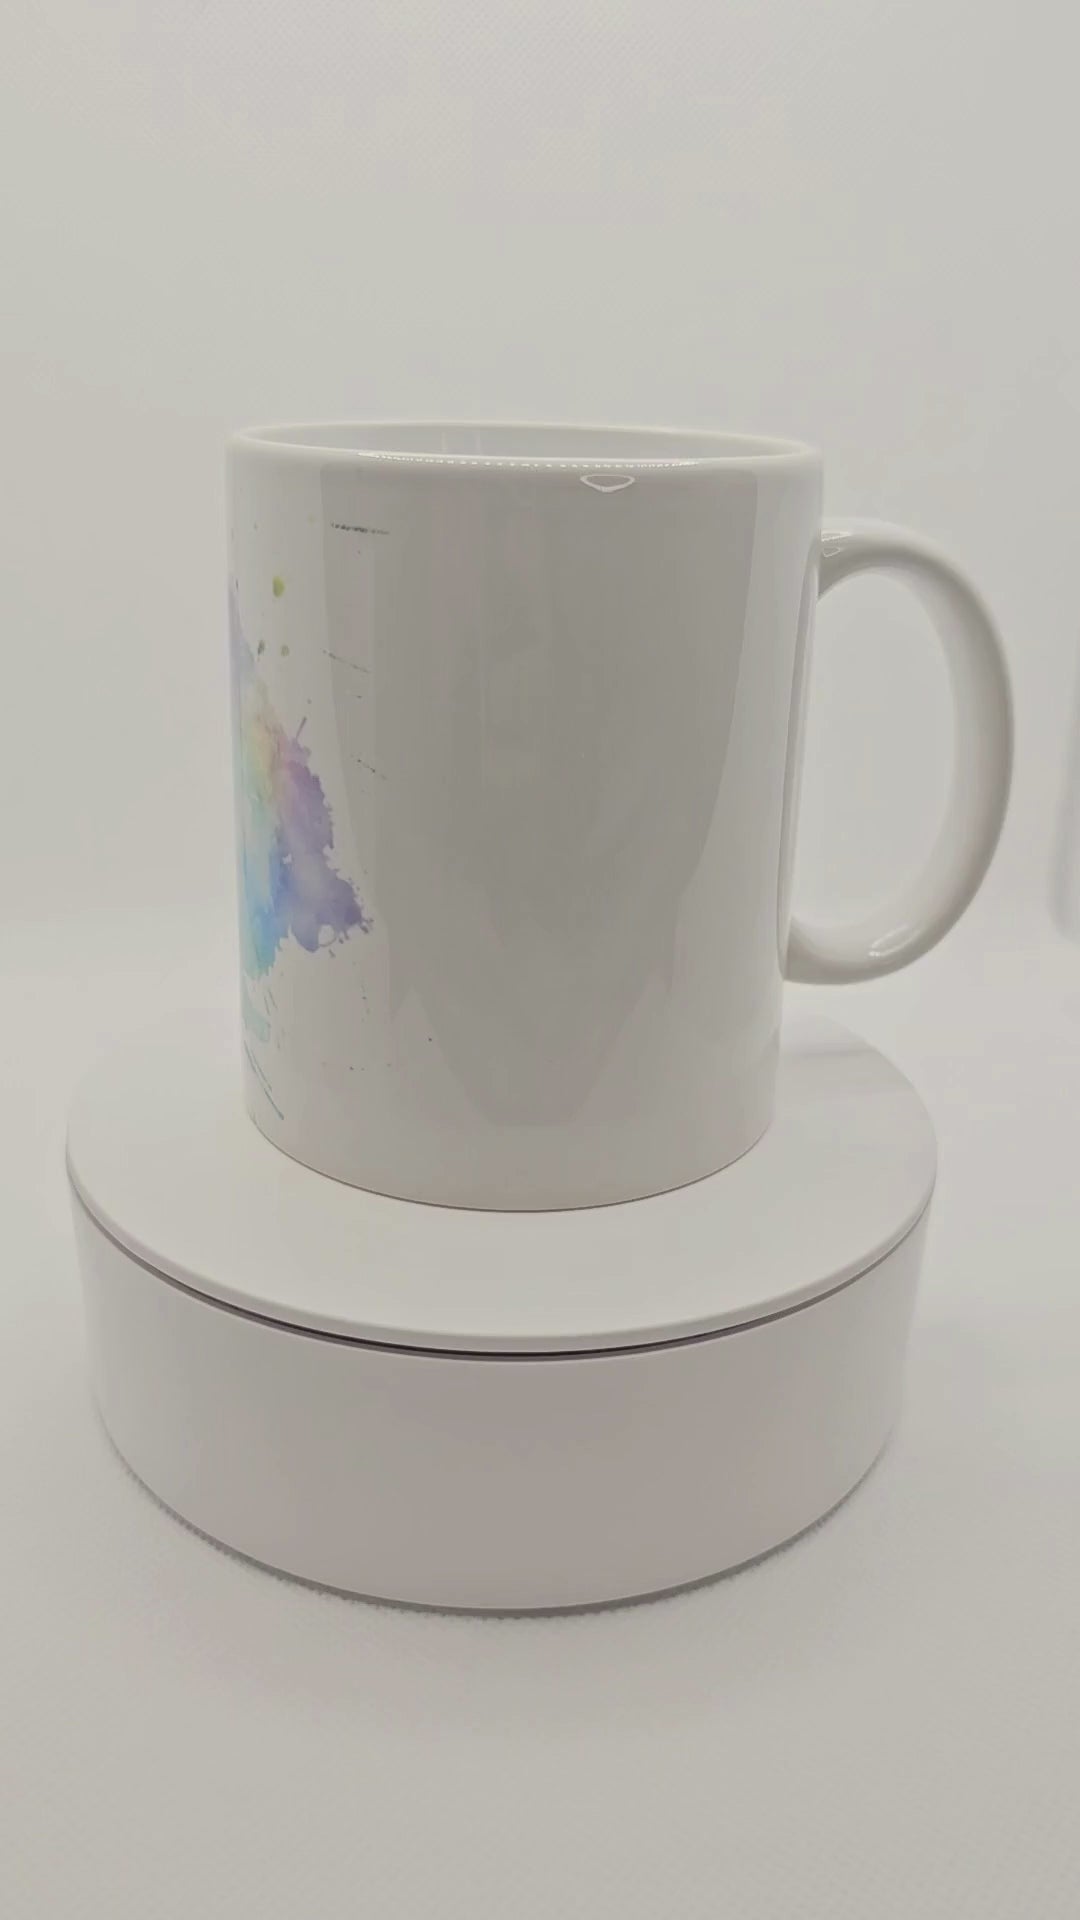 Dream it Believe it Achieve it motivational coffee mugs, personalized motivational mug, personalized coffee mug, cute mug, customized gift, personalized gift